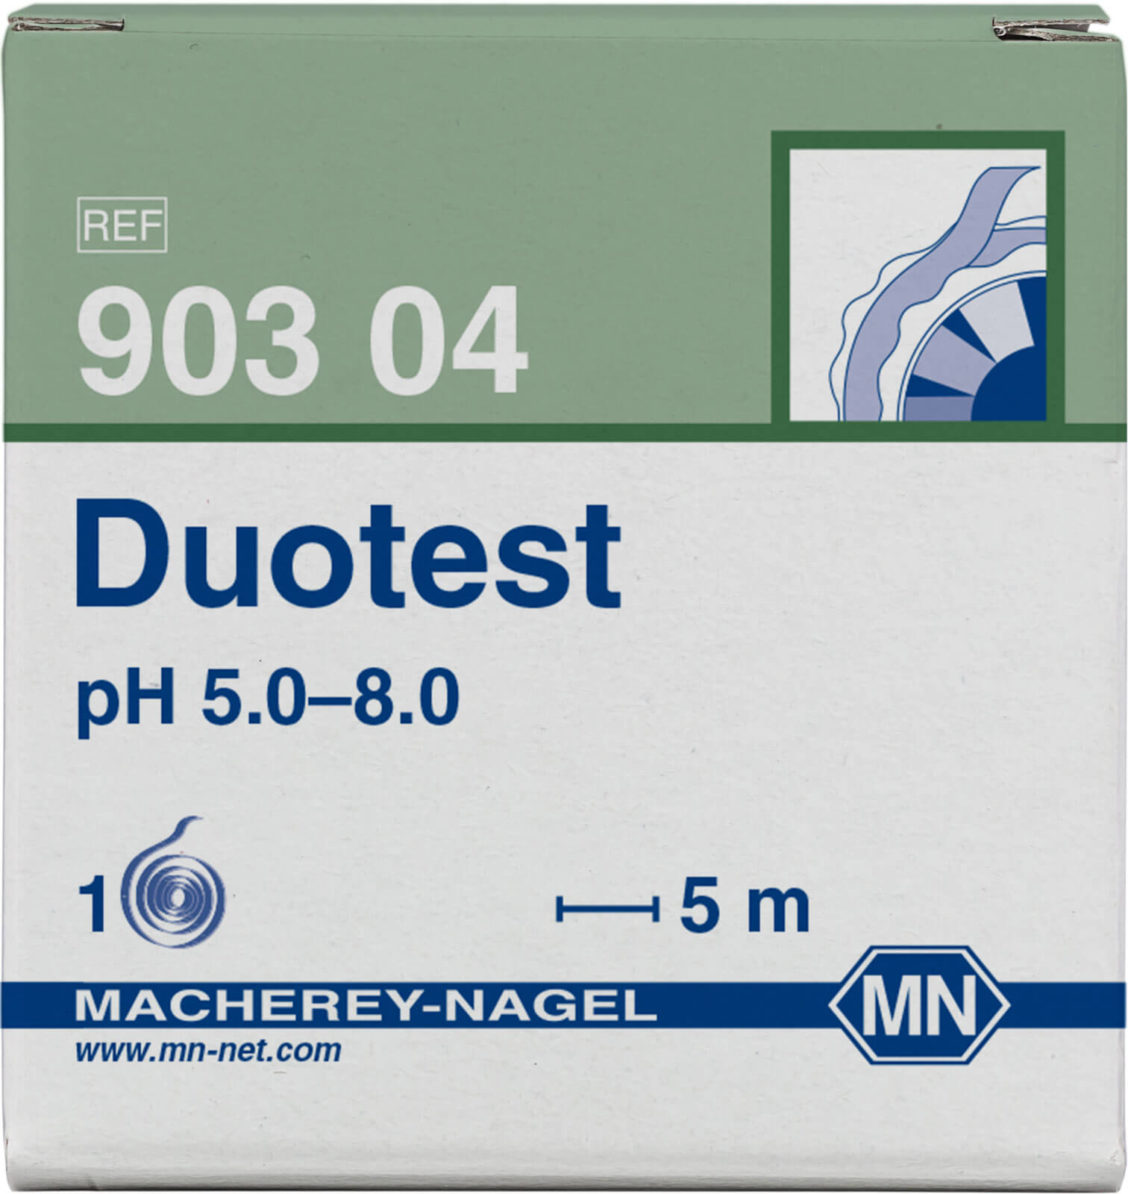 M&N 90304 Duotest pH 5,0-8,0